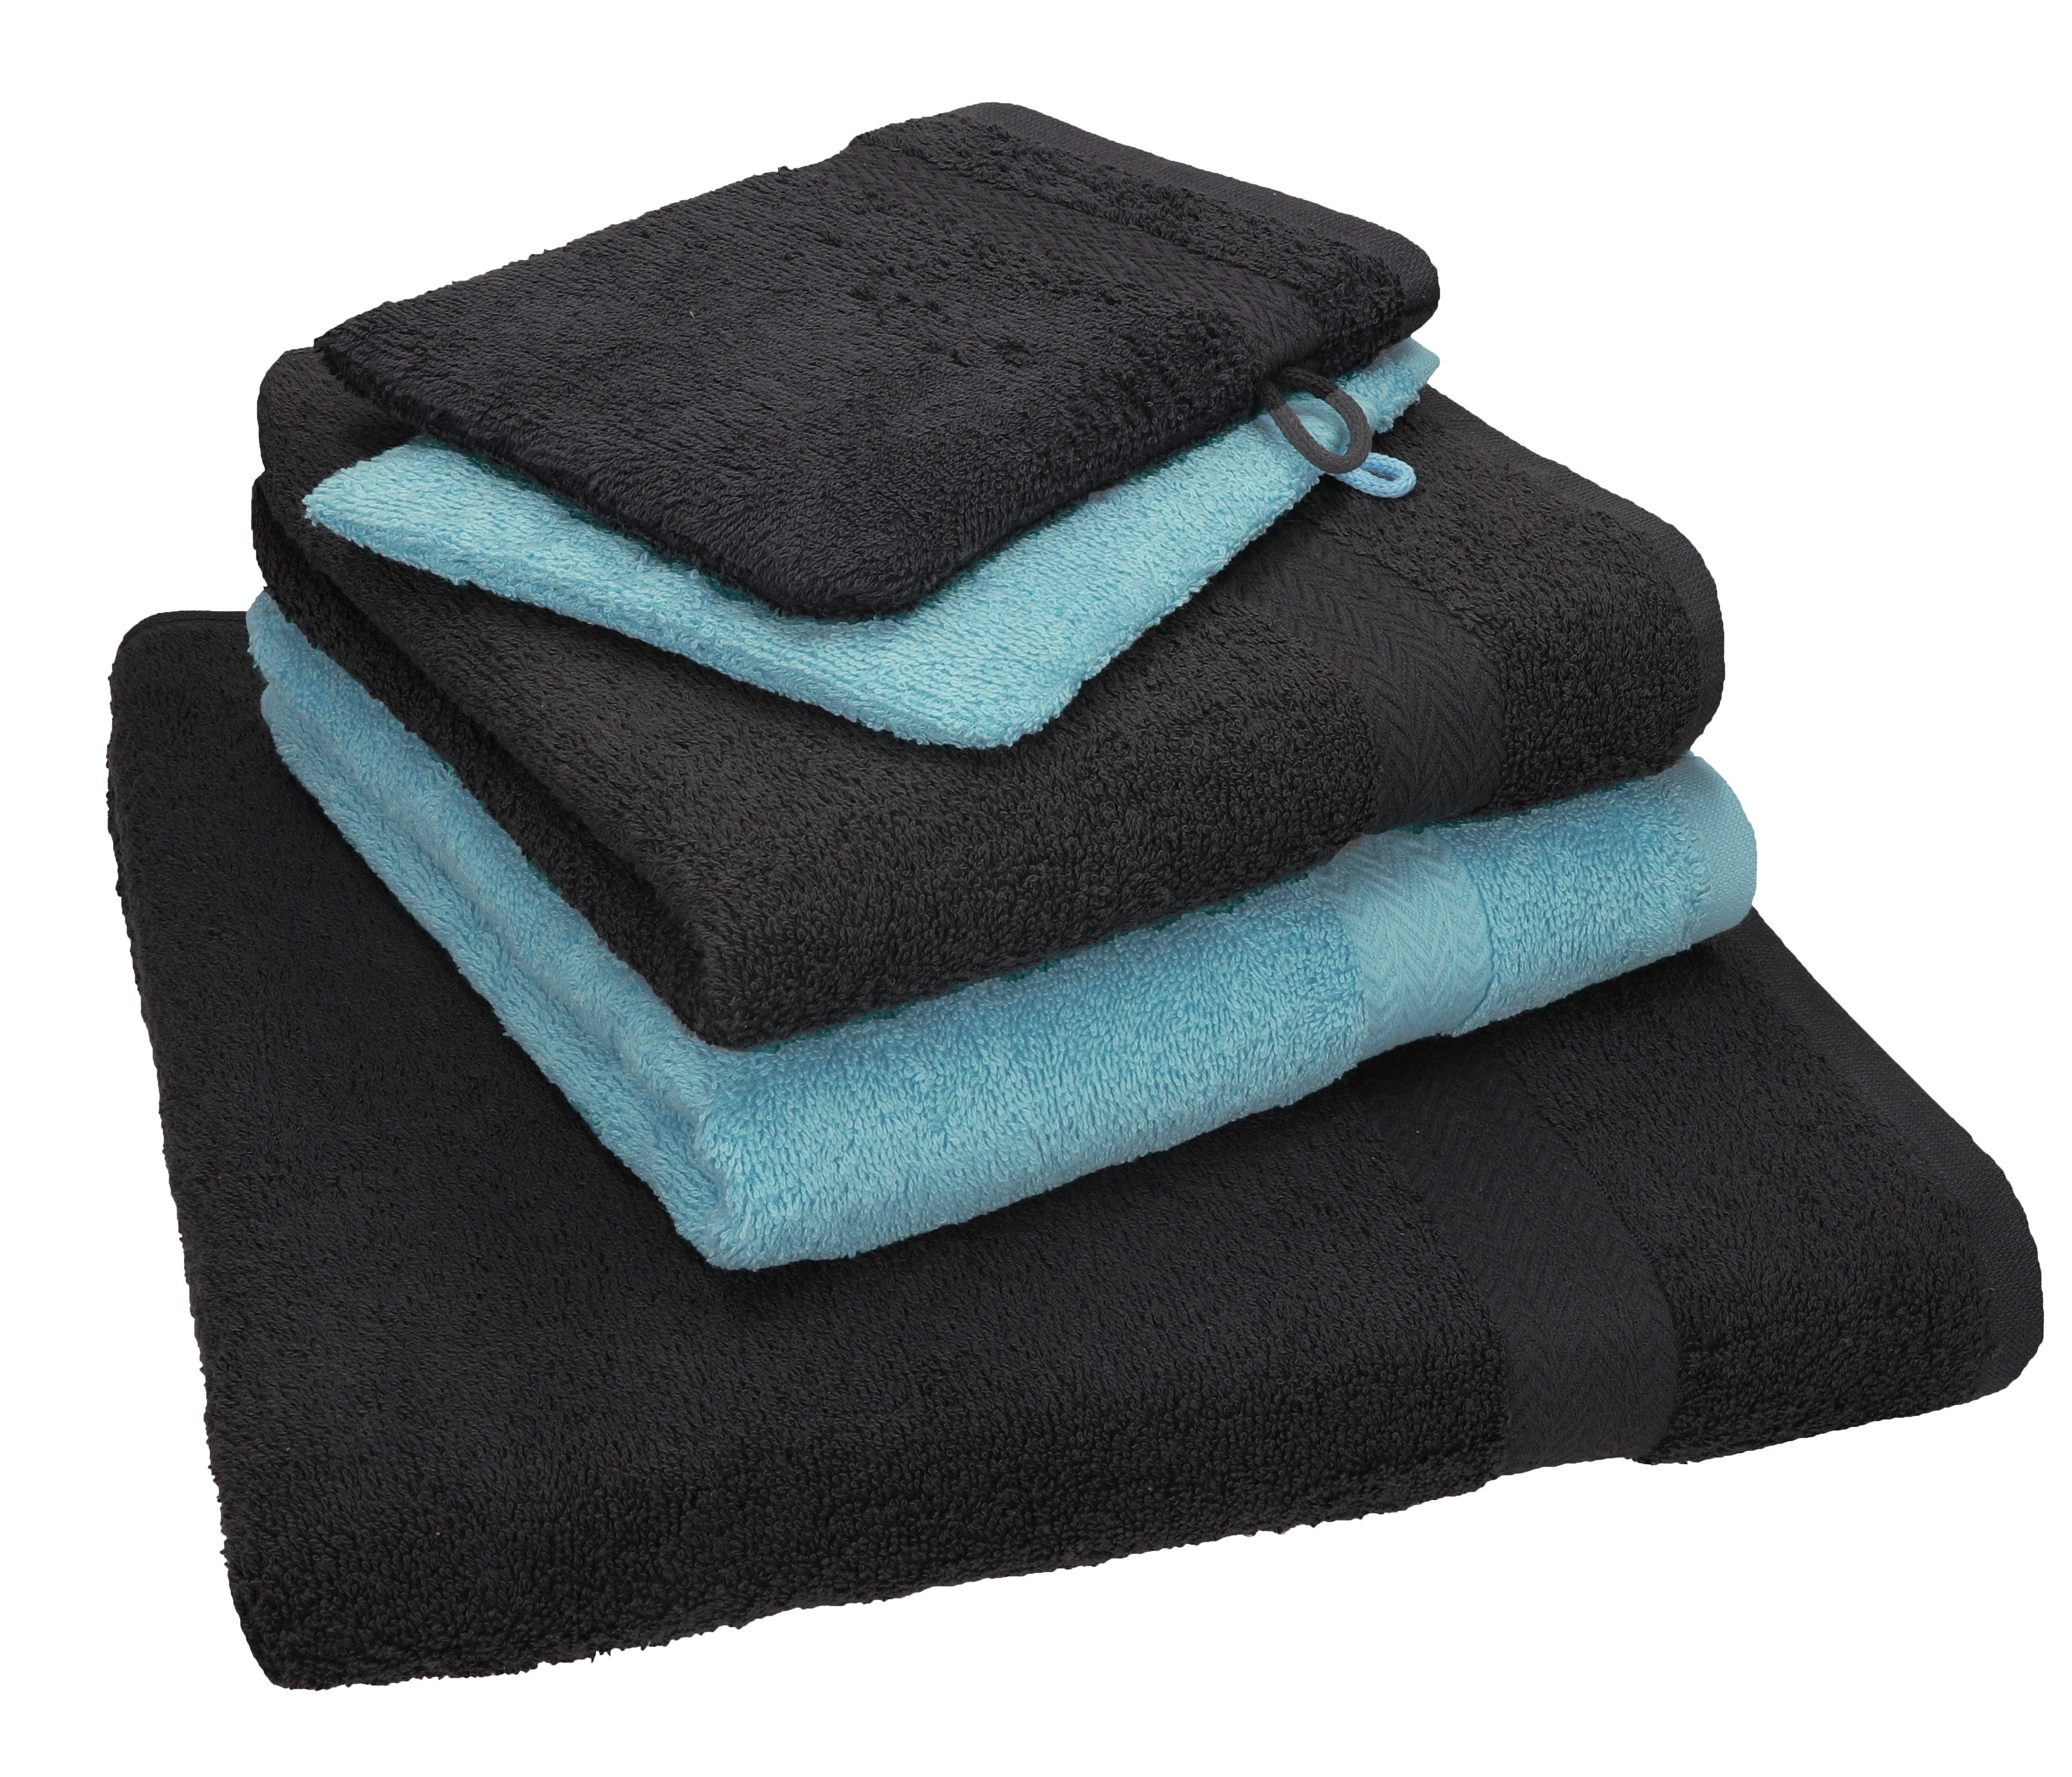 graphit Betz ocean 2 5 grau Handtuch Set Baumwolle 100% 2 100% Handtuch 1 TLG. Handtücher Waschhandschuhe, Set SINGLE Baumwolle und Duschtuch PACK